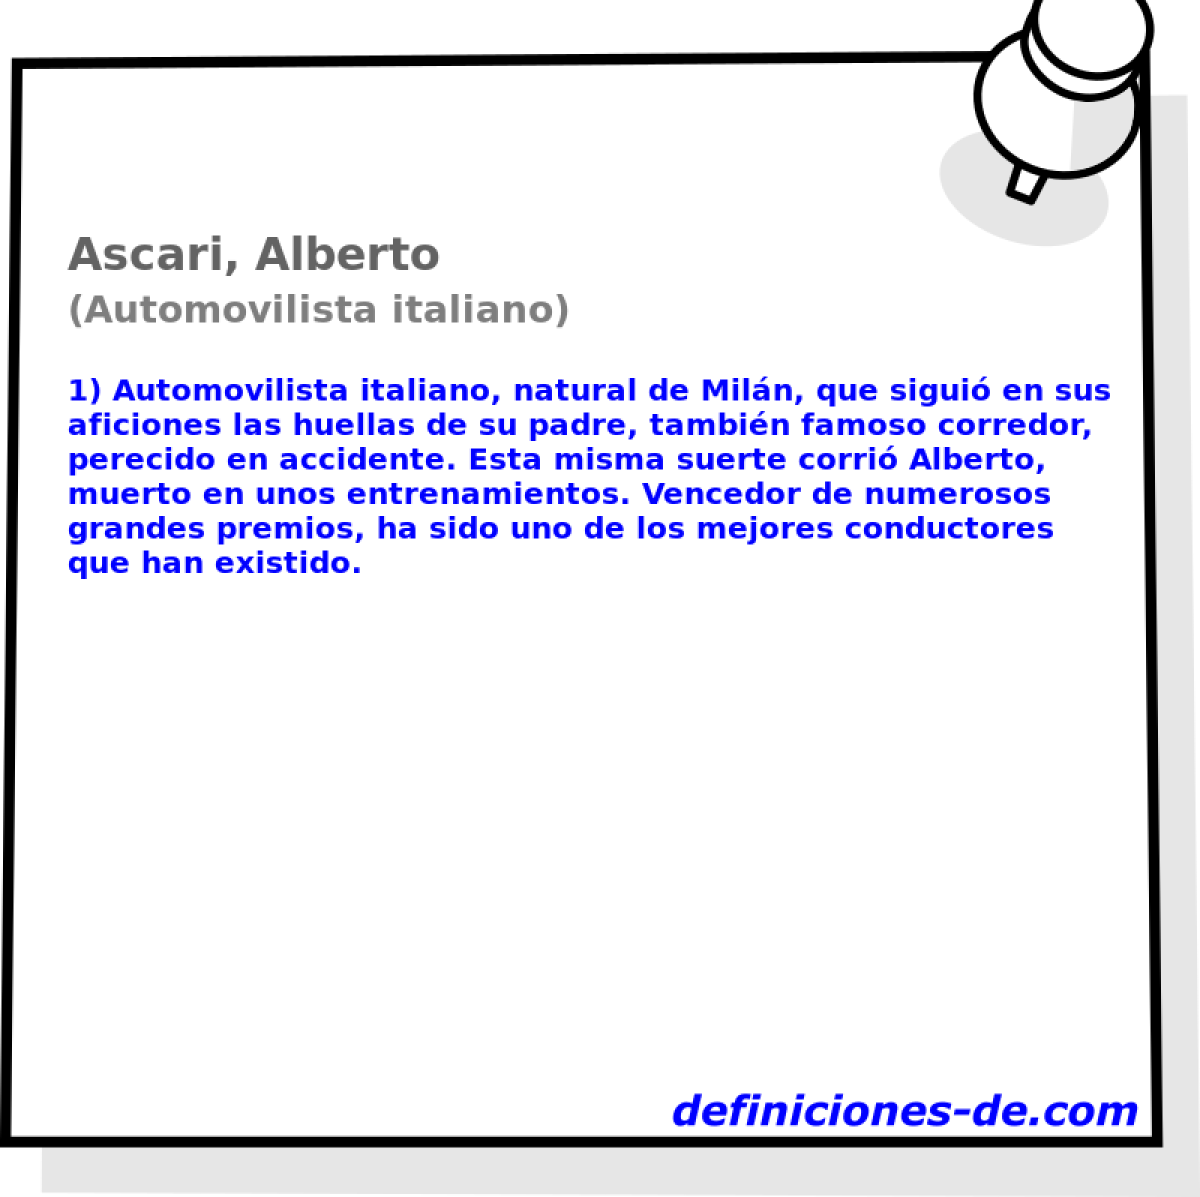 Ascari, Alberto (Automovilista italiano)